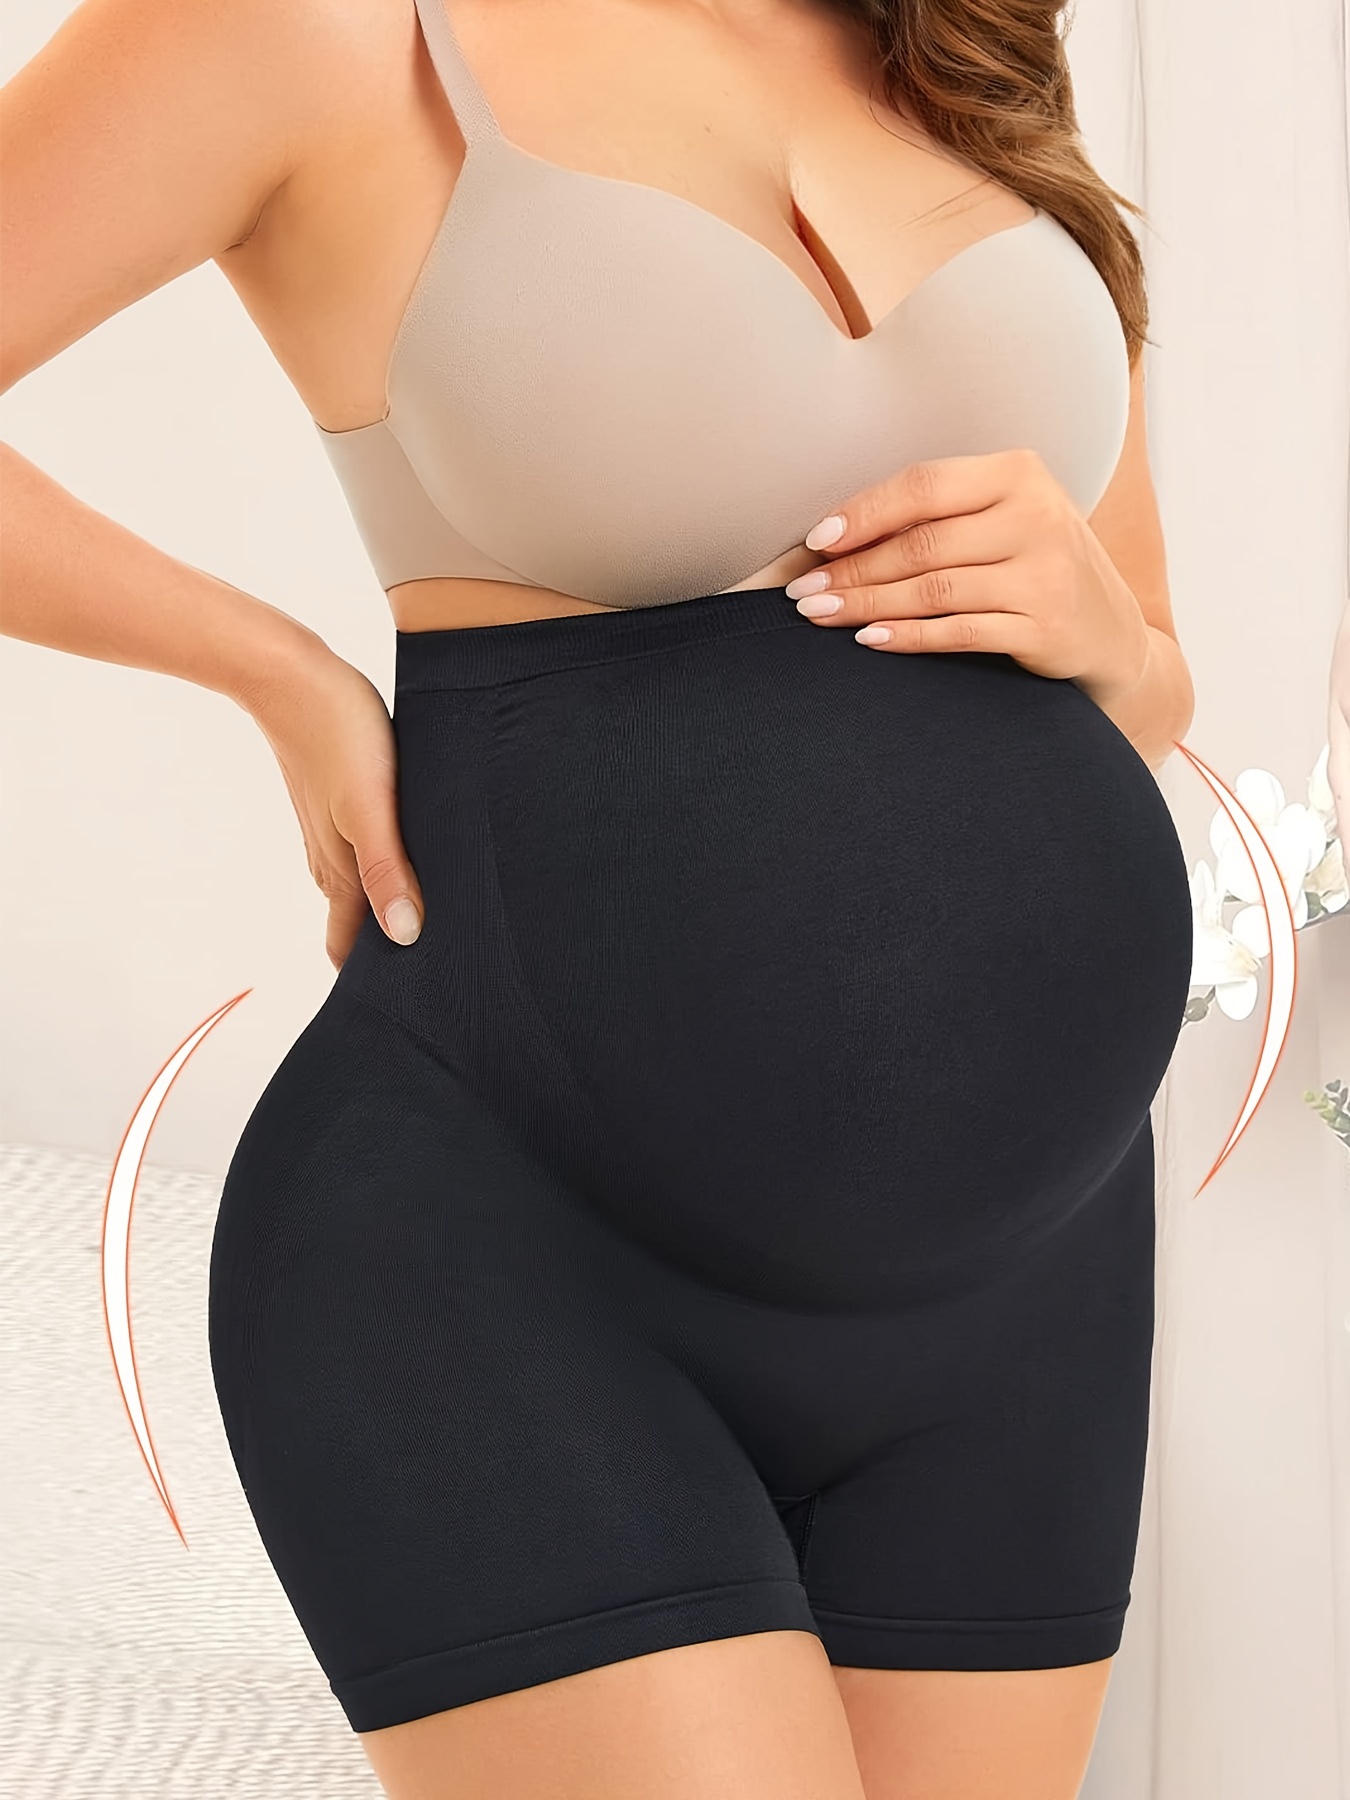 Generic Super Stretch Waist Cinchers Pregnancy Belly Women-XXXL @ Best  Price Online